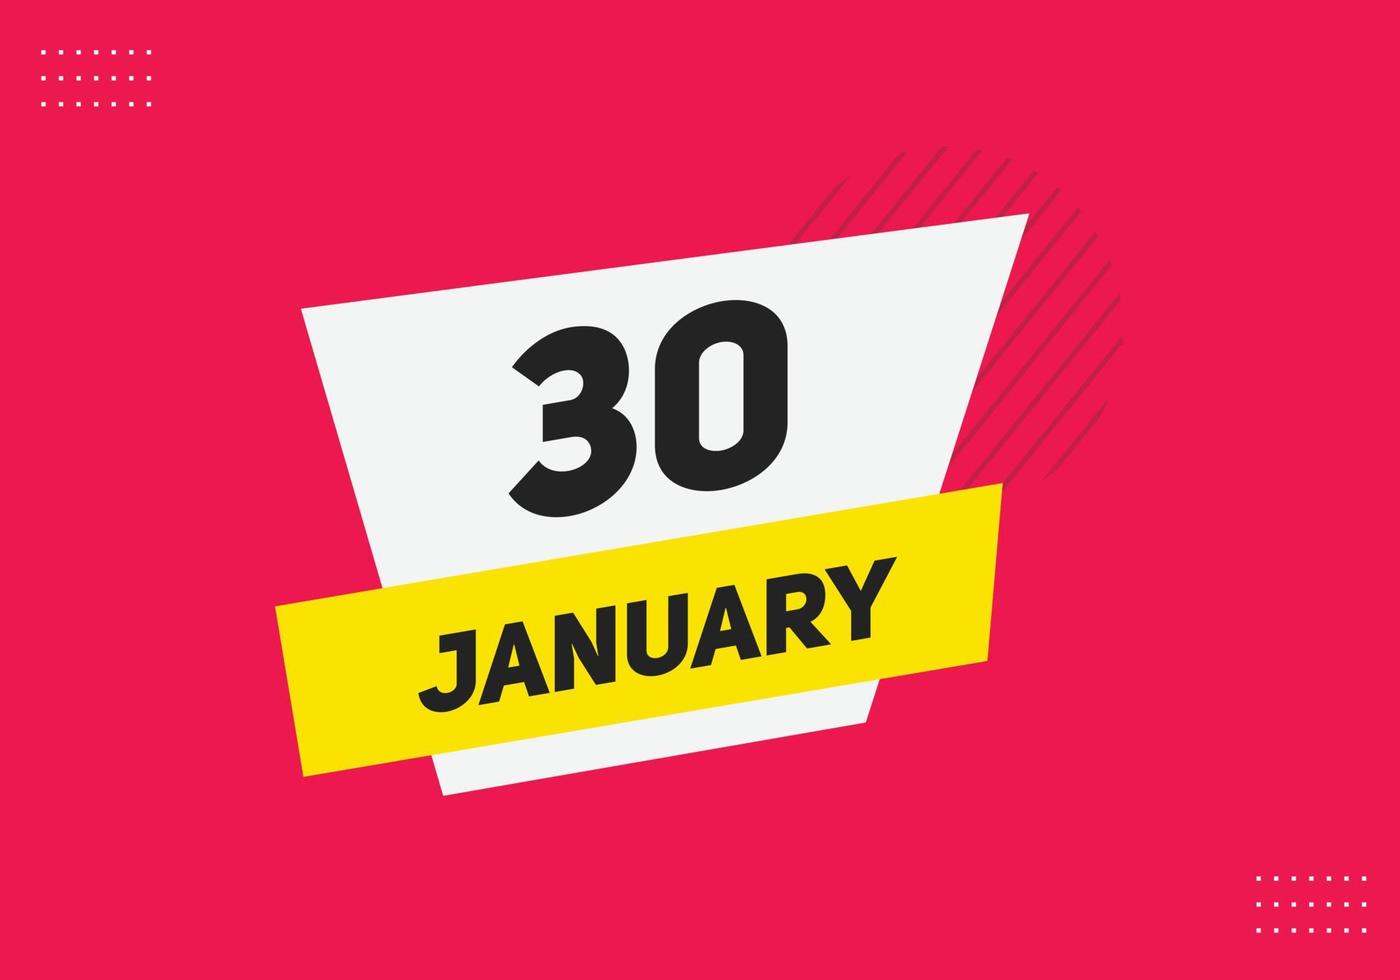 Recordatorio del calendario del 30 de enero. Plantilla de icono de calendario diario del 30 de enero. plantilla de diseño de icono de calendario 30 de enero. ilustración vectorial vector